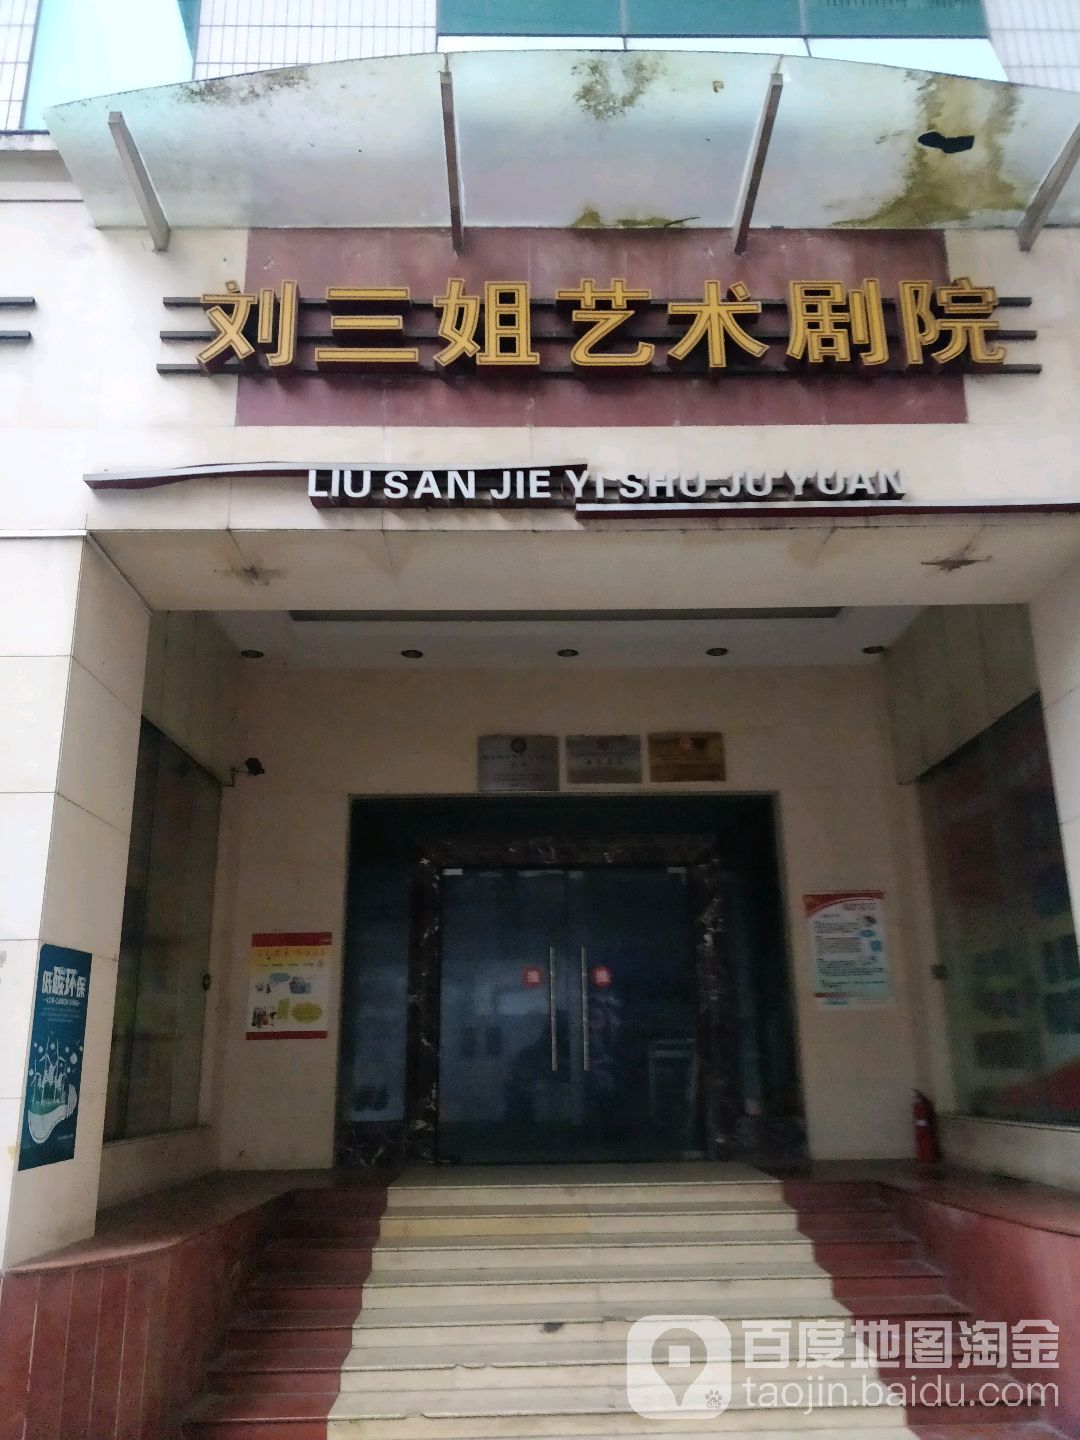 劉三姐藝術劇院